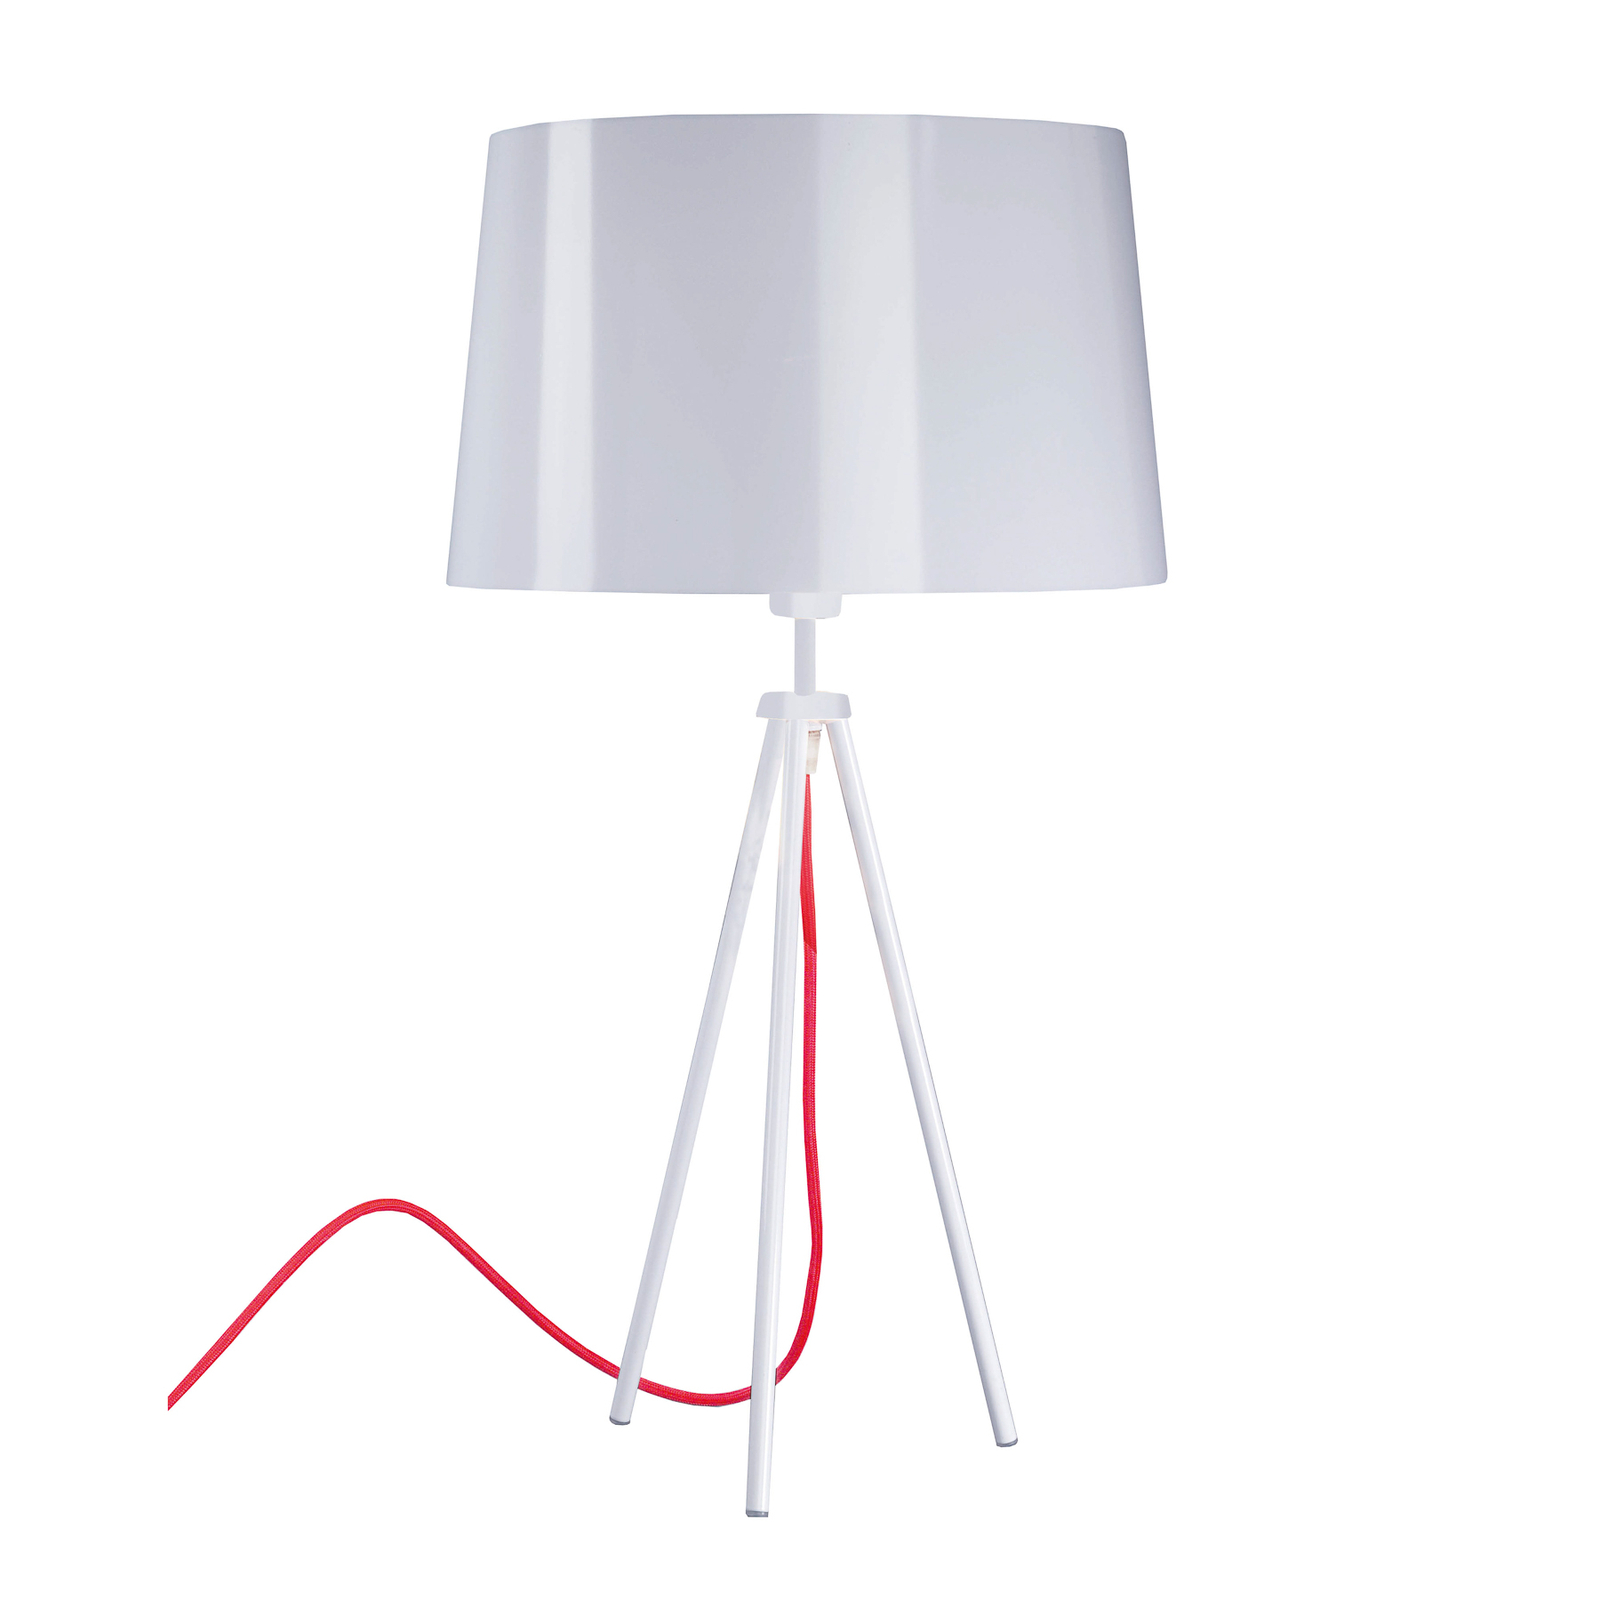 Aluminor Tropic stolová lampa biela, kábel červená